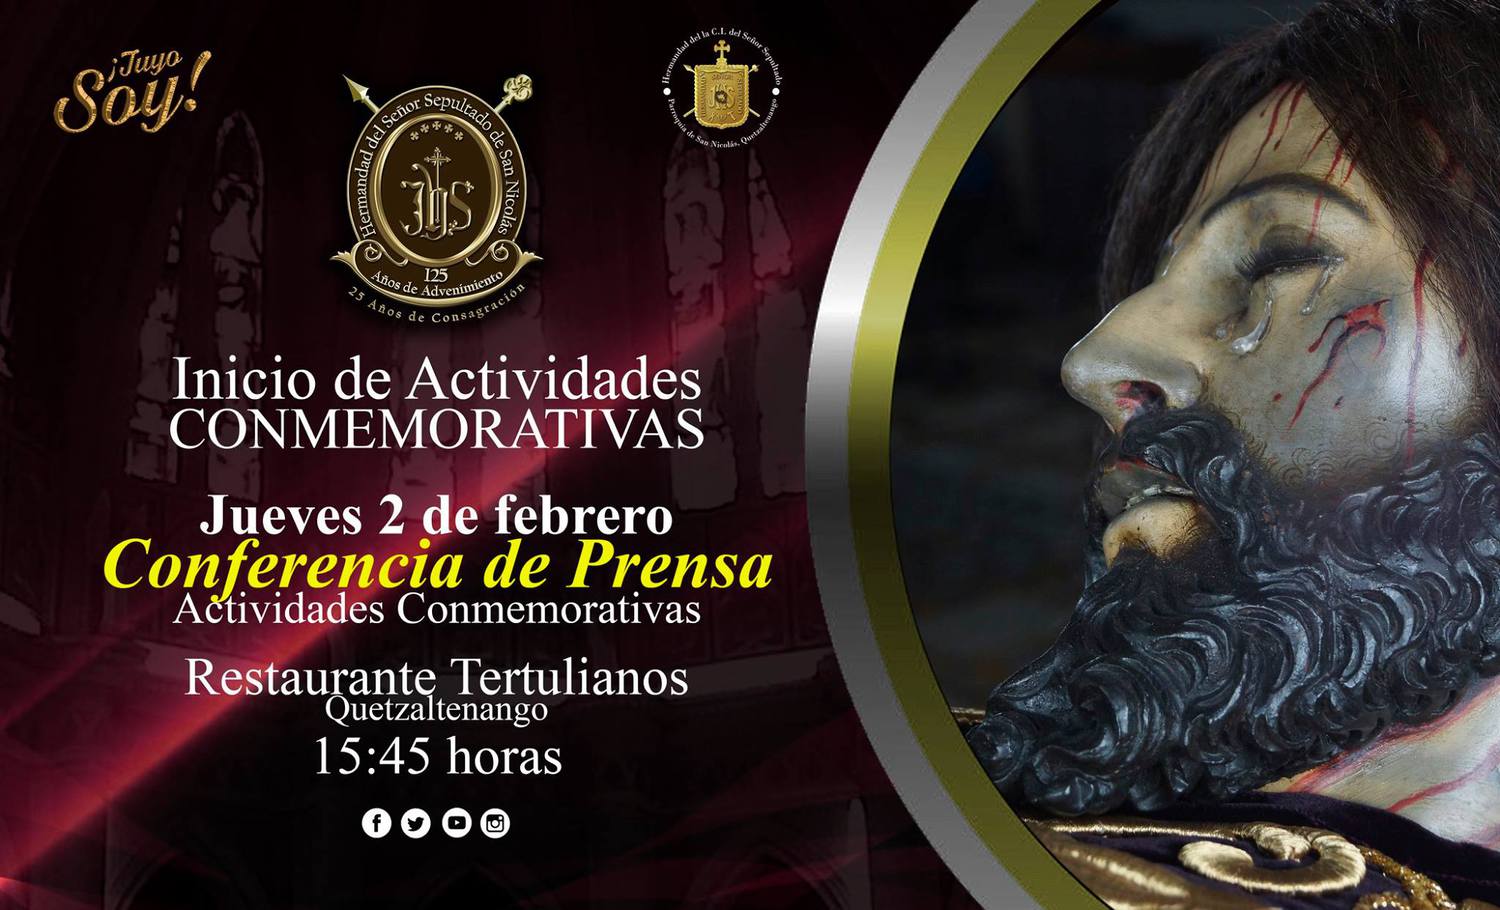 Inicio de Actividades Conmemorativas del Señor Sepultado de San Nicolás, Quetzaltenango